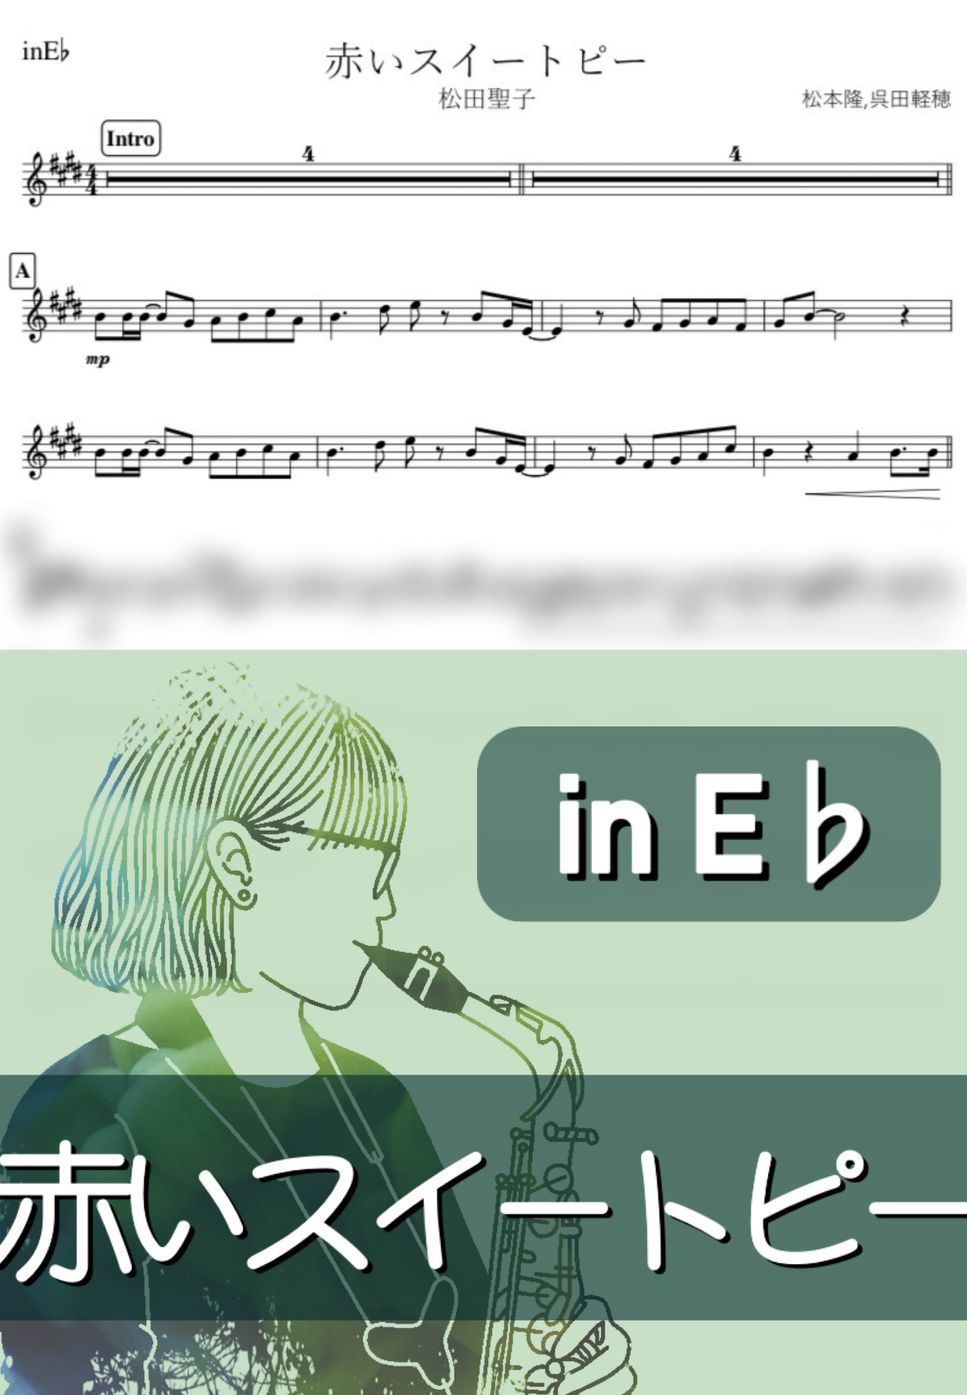 松田聖子 - 赤いスイートピー (E♭) by kanamusic